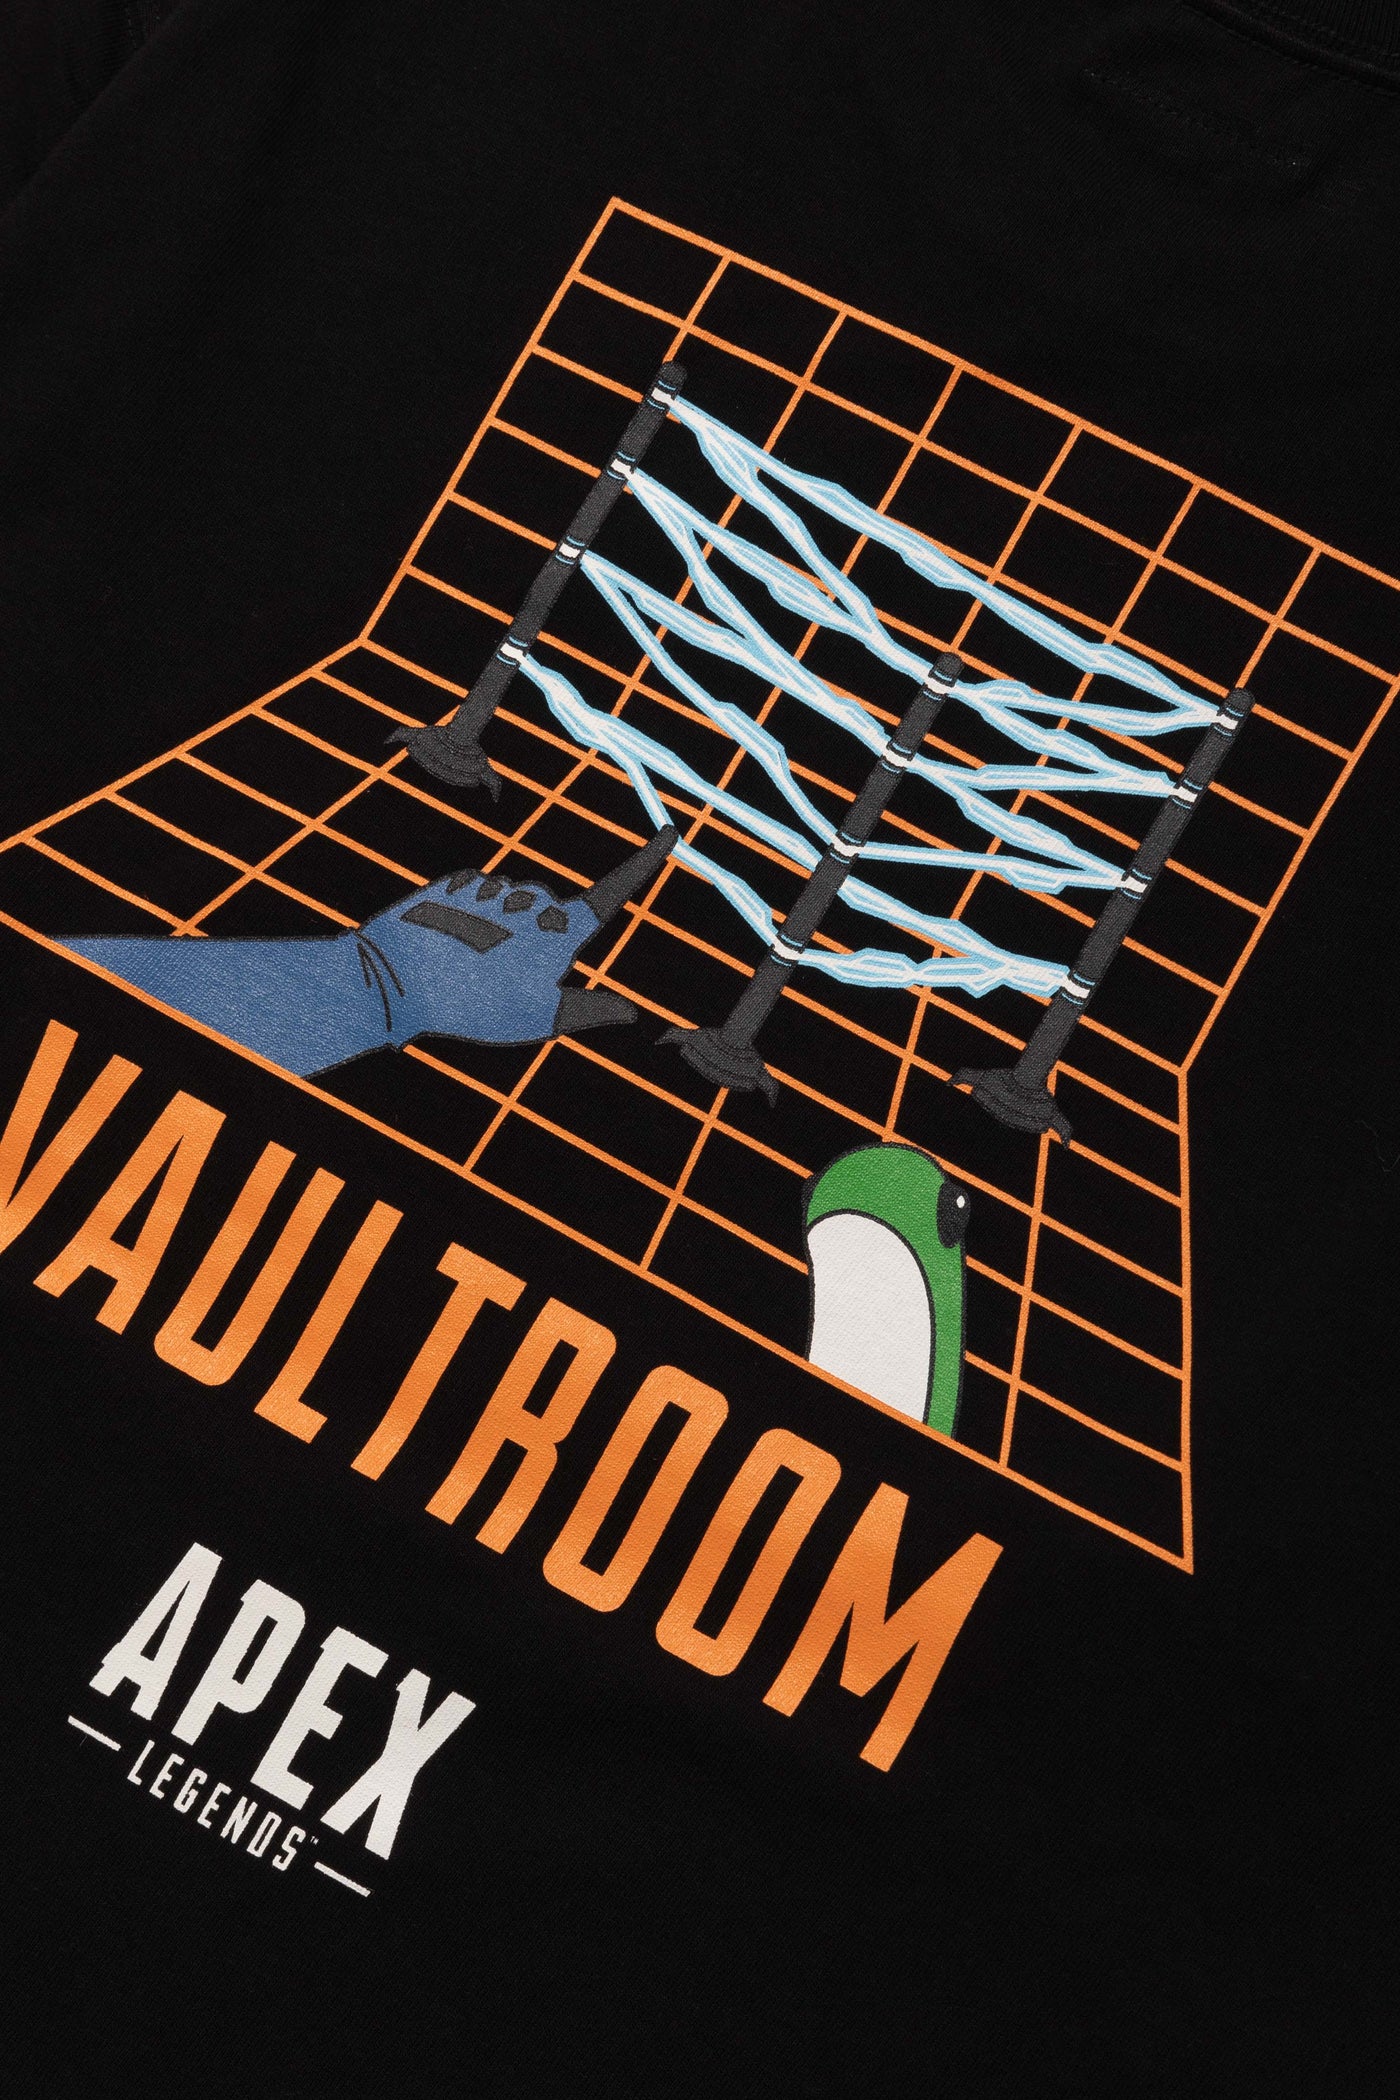 Vaultroom APEX LEGENDS WATTSON TEE XL